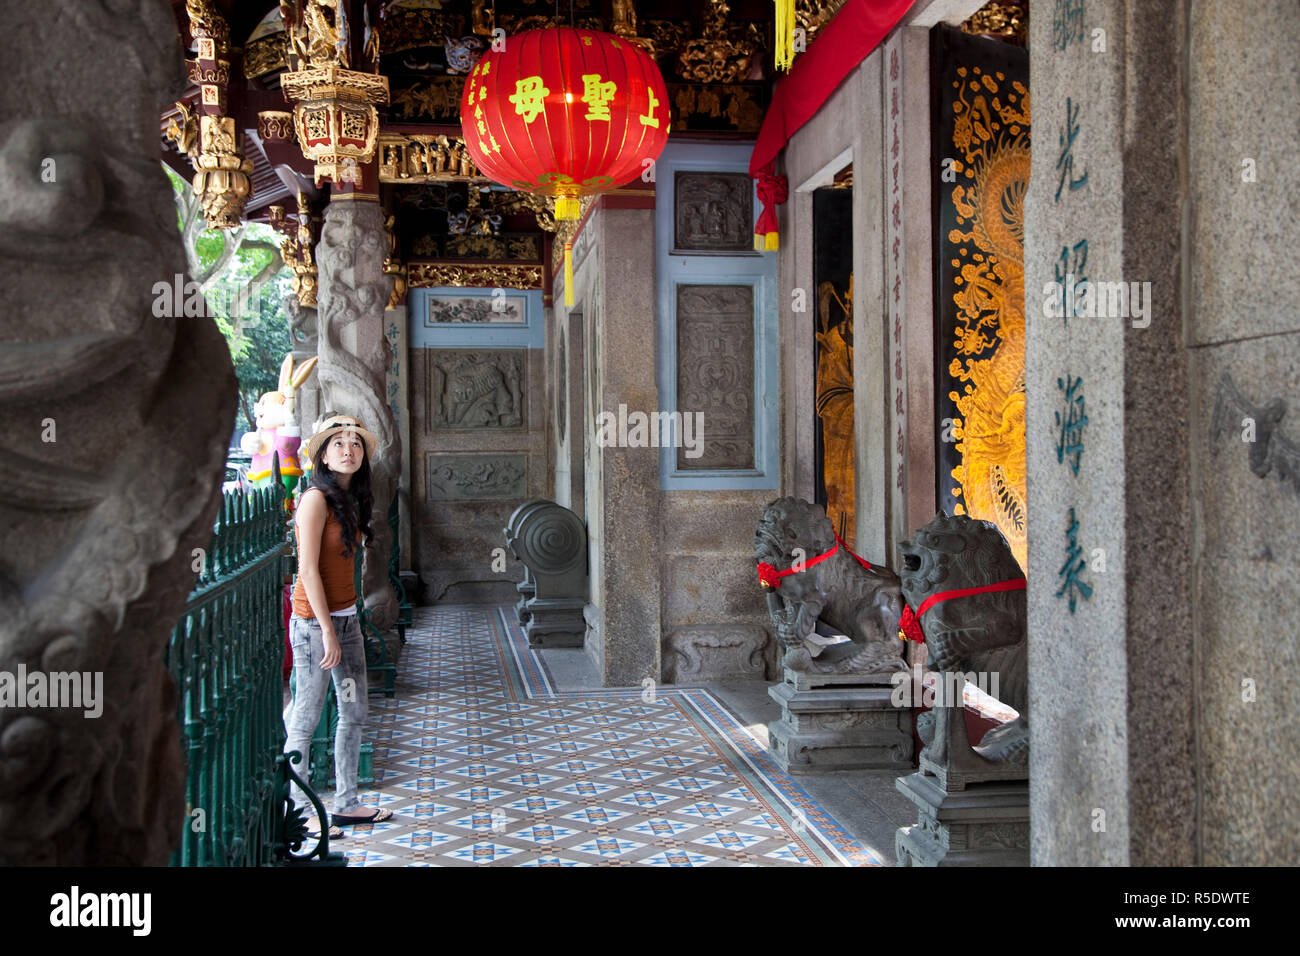 Asiatische Frau in einem chinesischen Tempel, China Town, Singapur Stockfoto